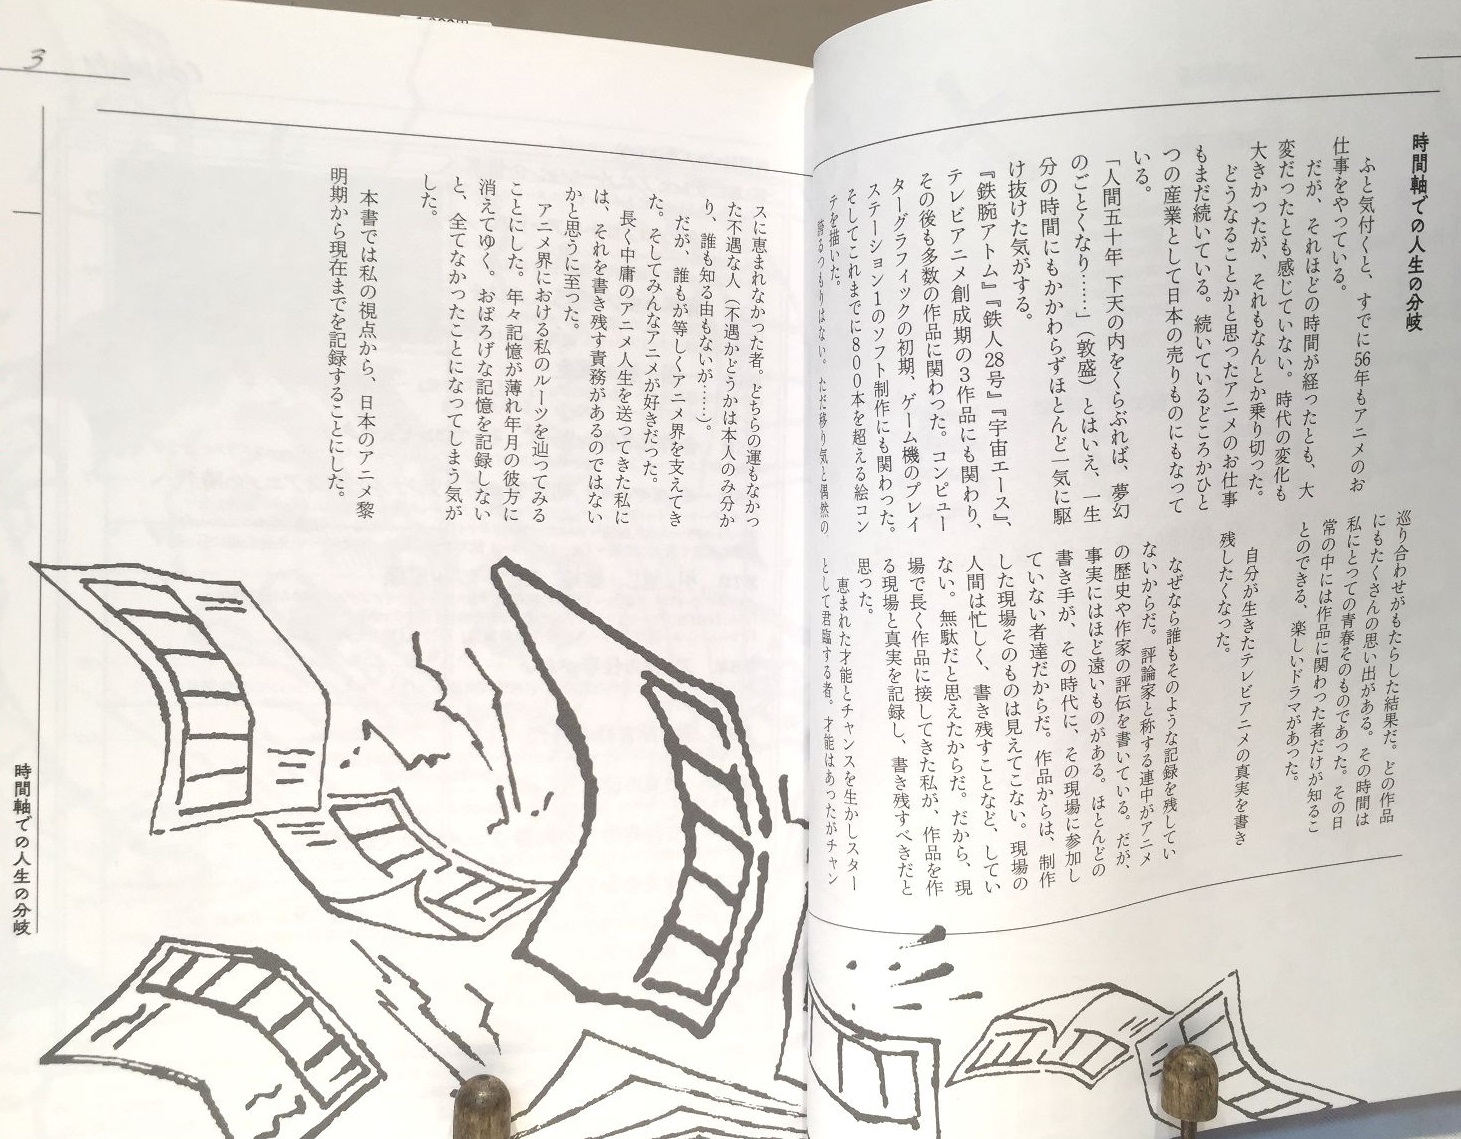 アニメの仕事は面白すぎる　絵コンテの鬼・奥田誠治と日本アニメ界のリアル画像